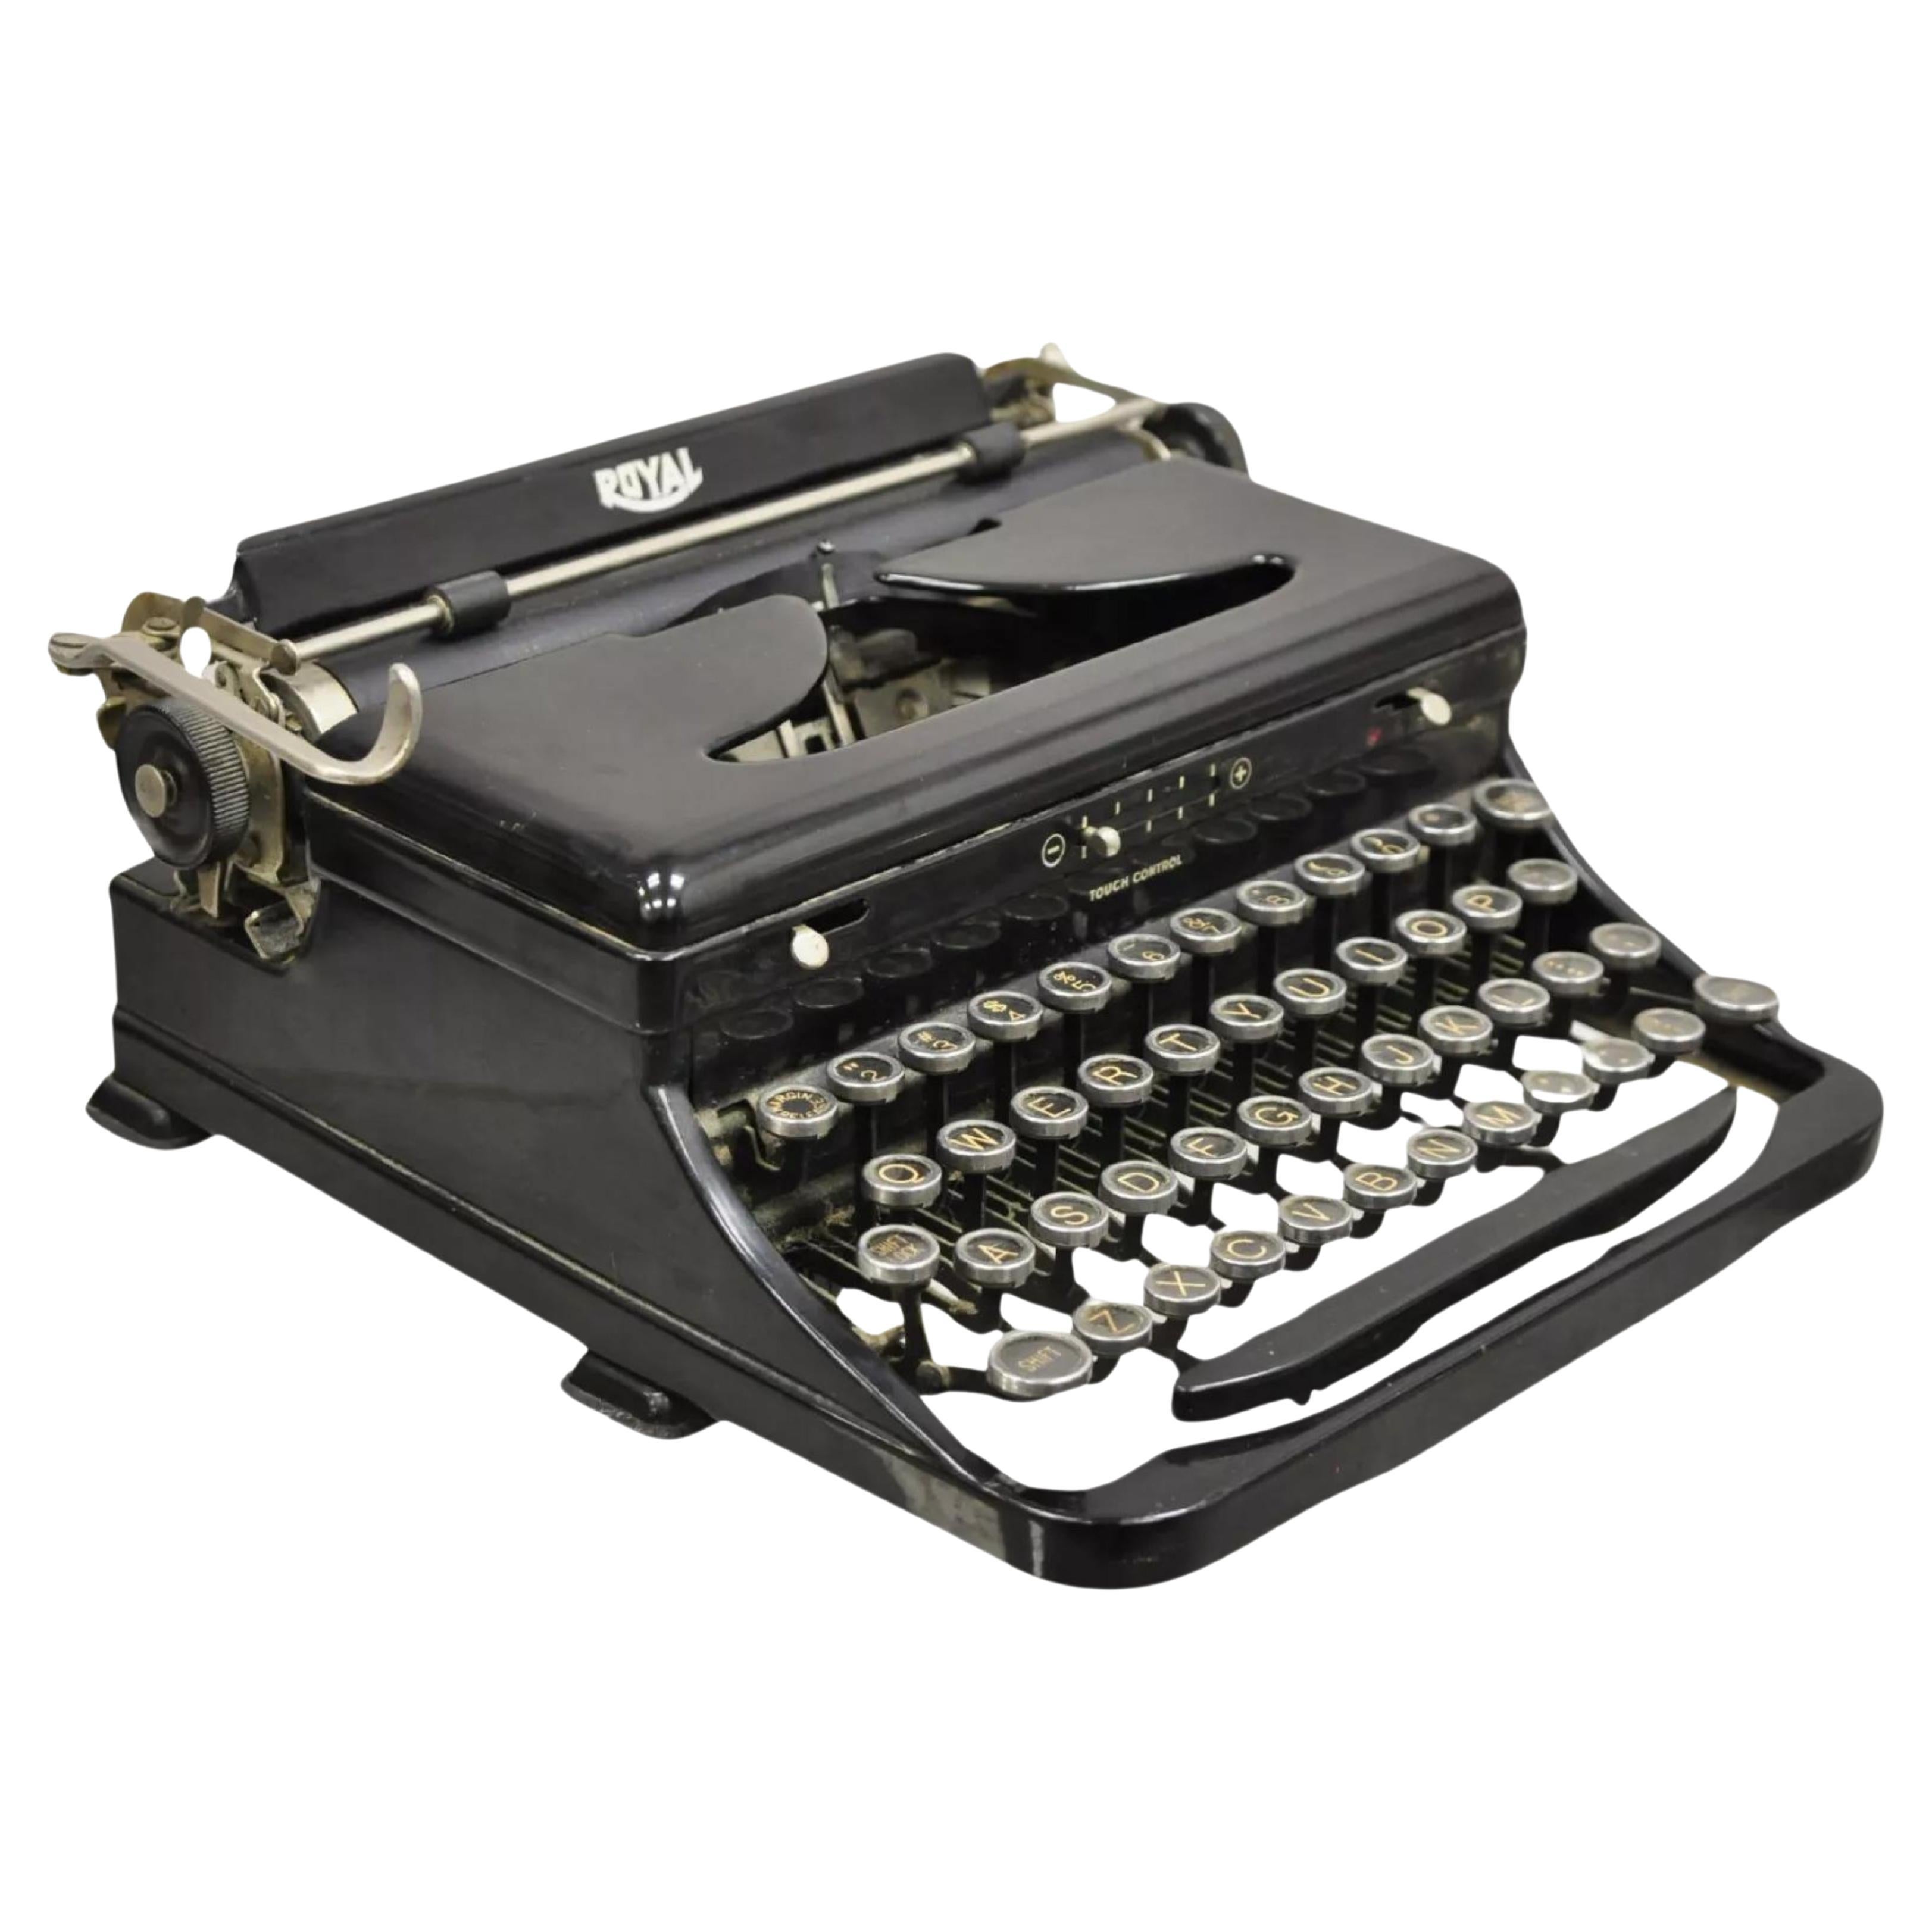 Antique 1938 Royal Model O Vintage Art Deco Black Portable Typewriter For Sale